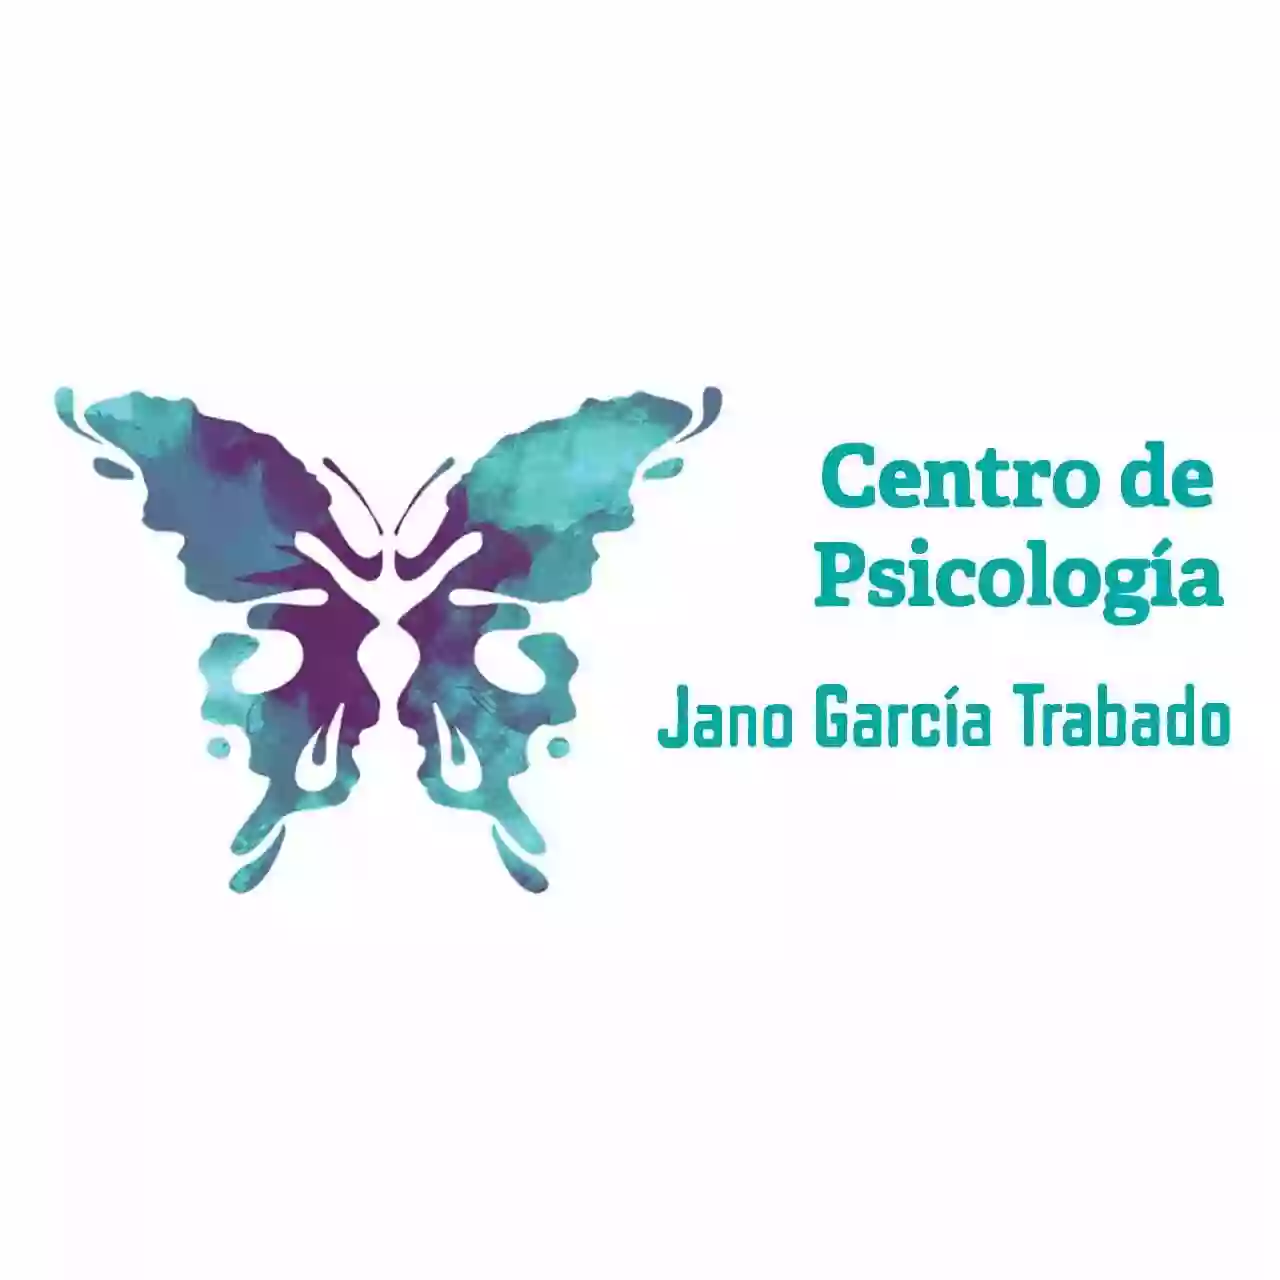 Centro de Psicología Jano García Trabado